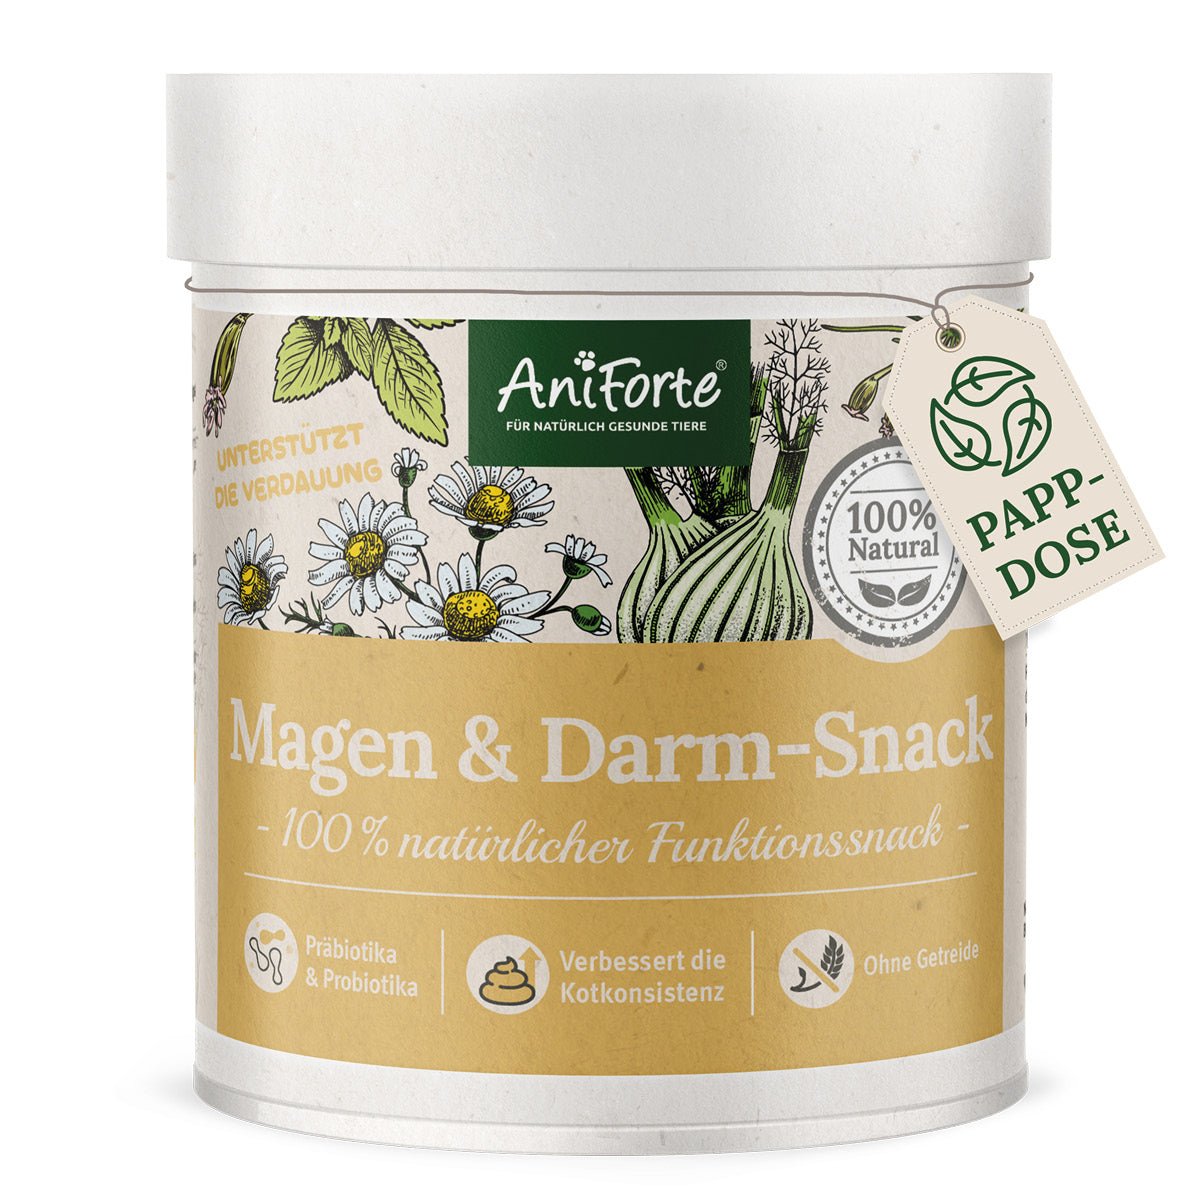 Magen & Darm-Snack - AniForte